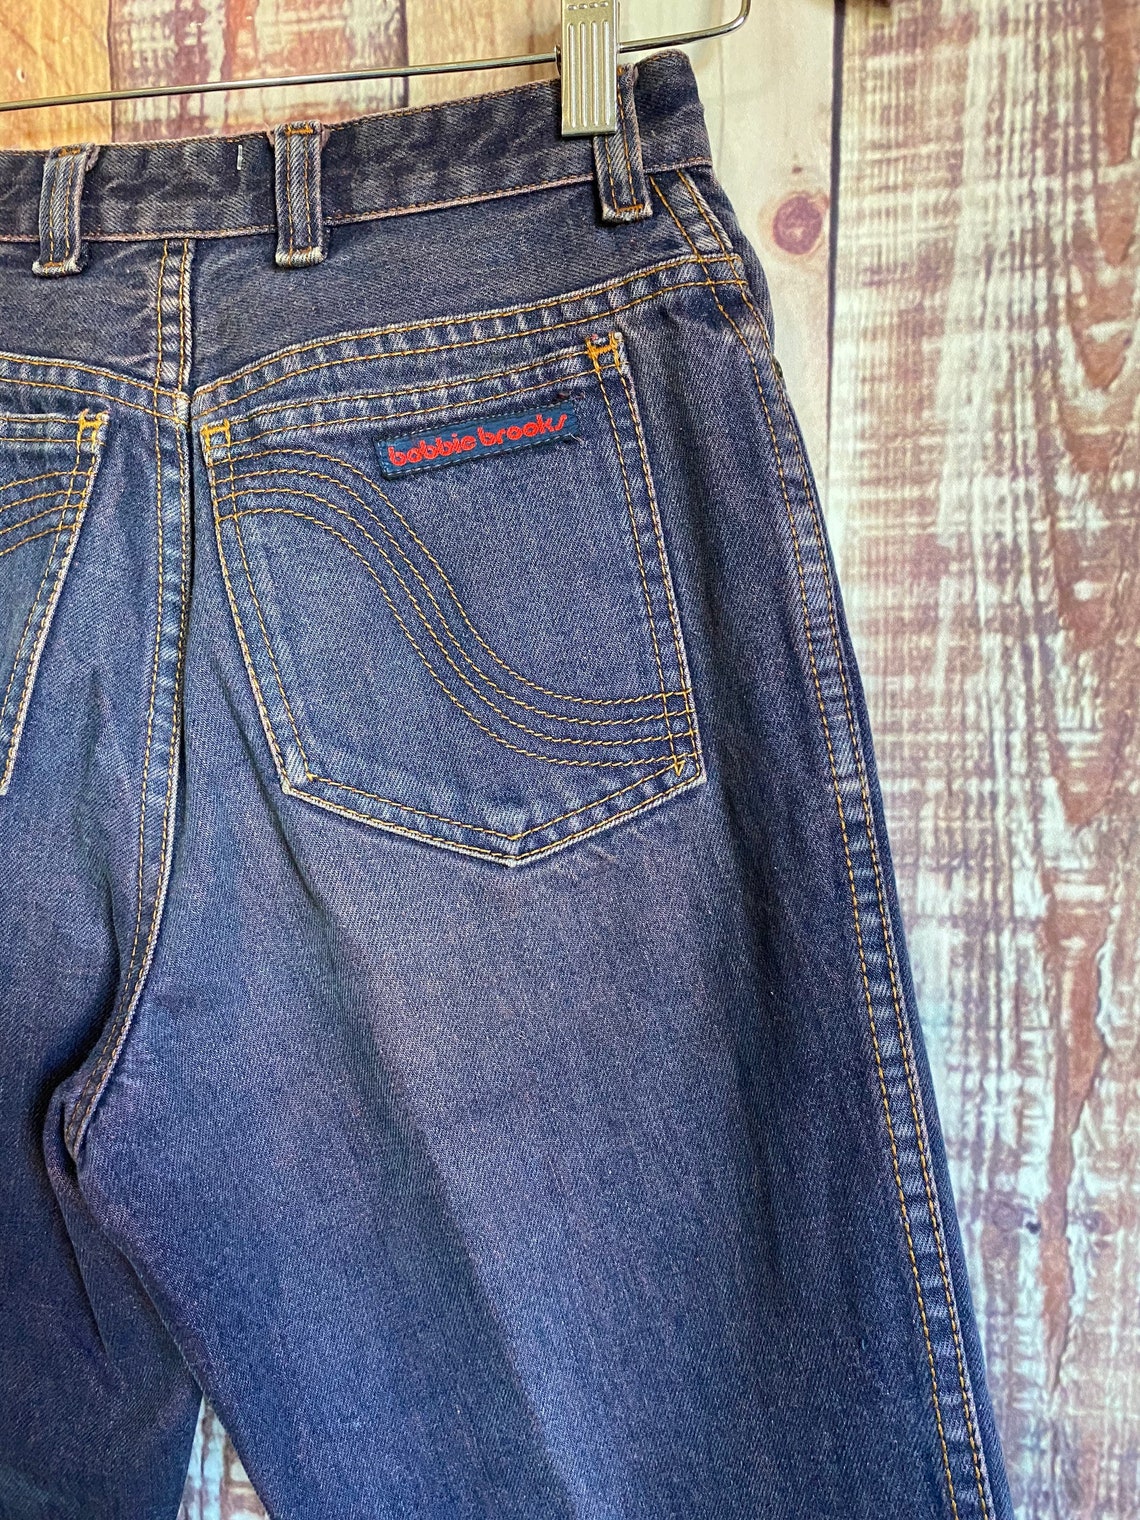 80's Purple Denim Jeans Vintage Bobbie Brooks Purple | Etsy